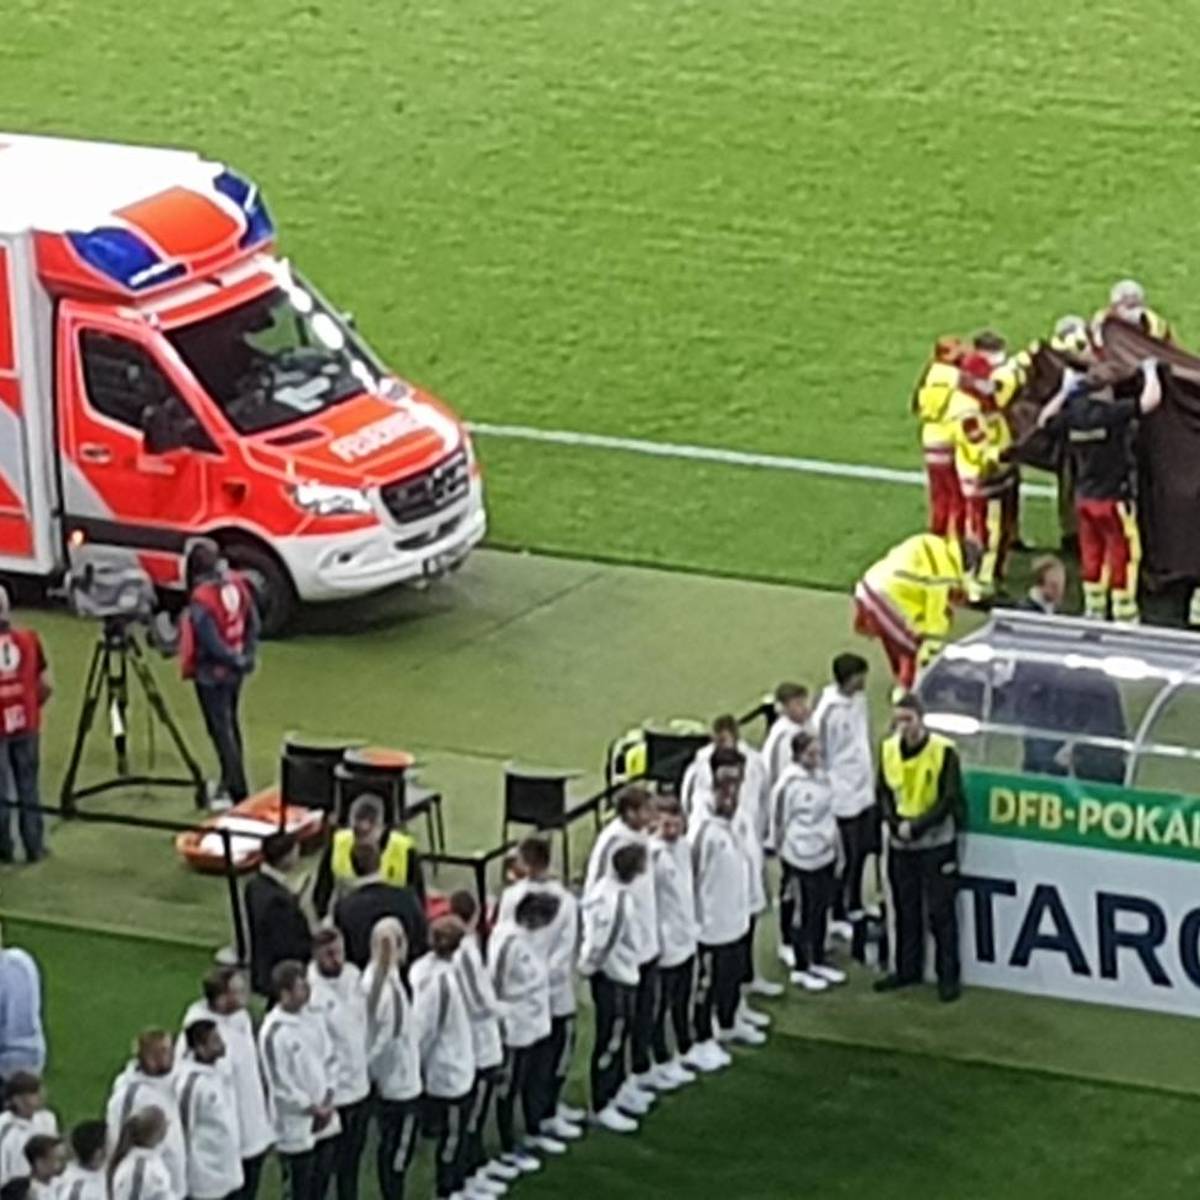 Nach dem Pokal-Finale kommt es zu einem medizinischen Notfall vor der Leipziger Trainerbank. Die Siegerehrung der Leipziger muss zunächst ausgesetzt werden. Später gibt es Entwarnung.